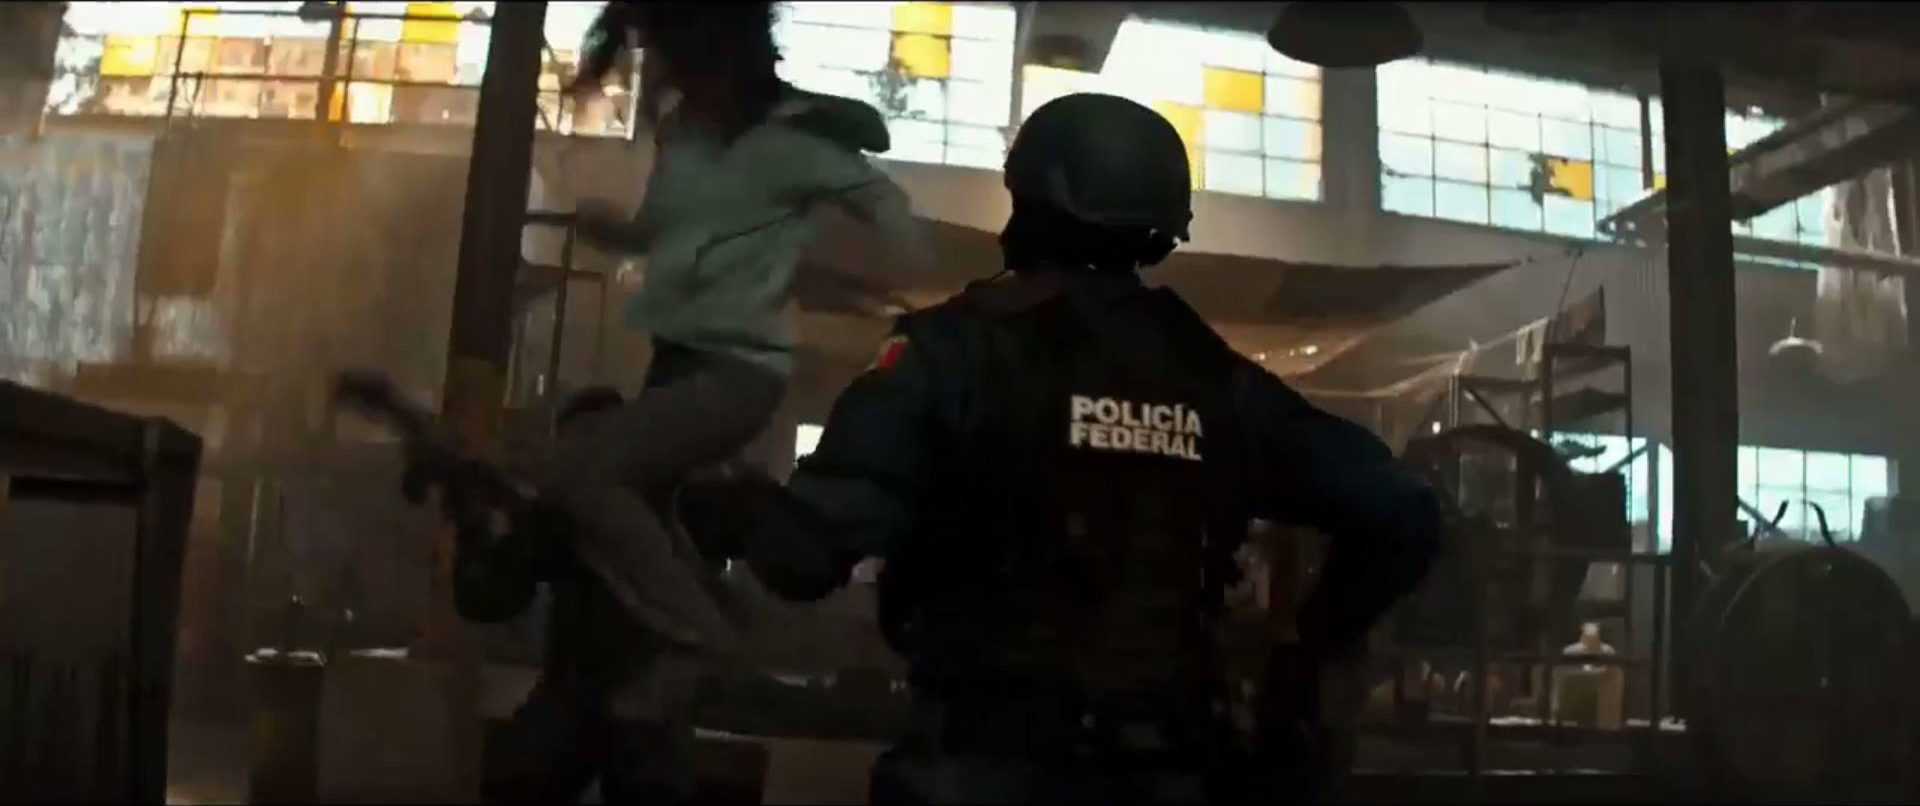 PRIMER TRAILER DE LOGAN, CON LA POLICÍA FEDERAL MEXICANA